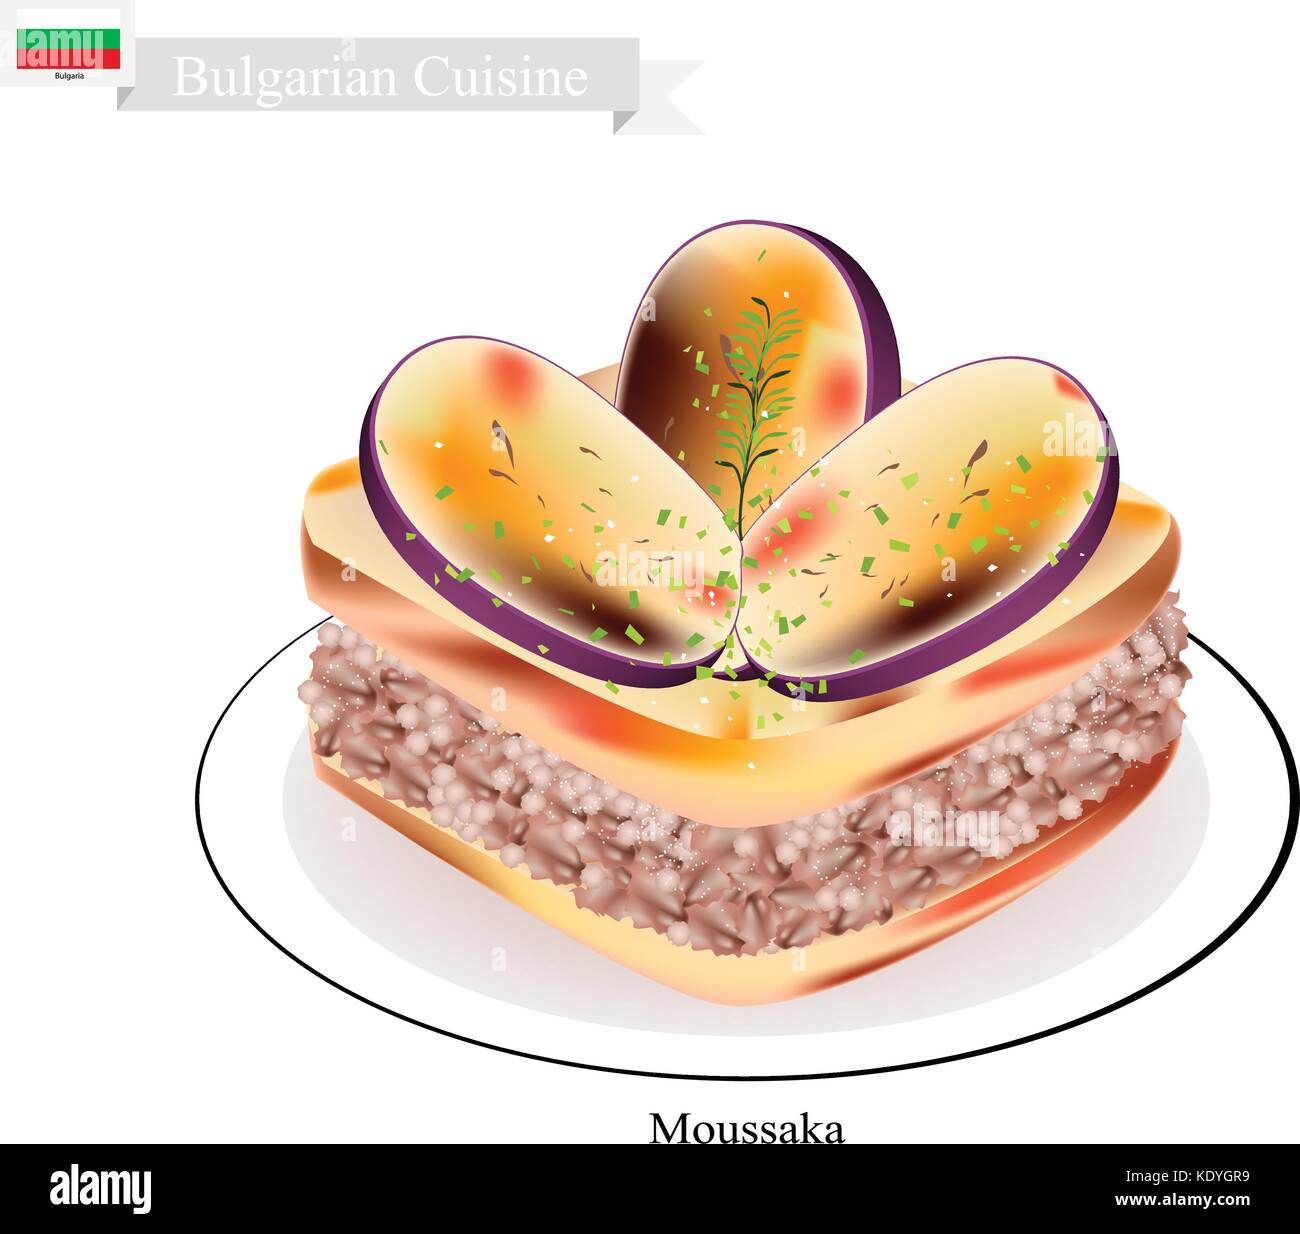 Une cuisine bulgare traditionnelle, la moussaka ou des tranches d'aubergine cuites dans une sauce crémeuse avec du boeuf haché sauce blanche. L'un des plus célèbre plat en bulgar Illustration de Vecteur